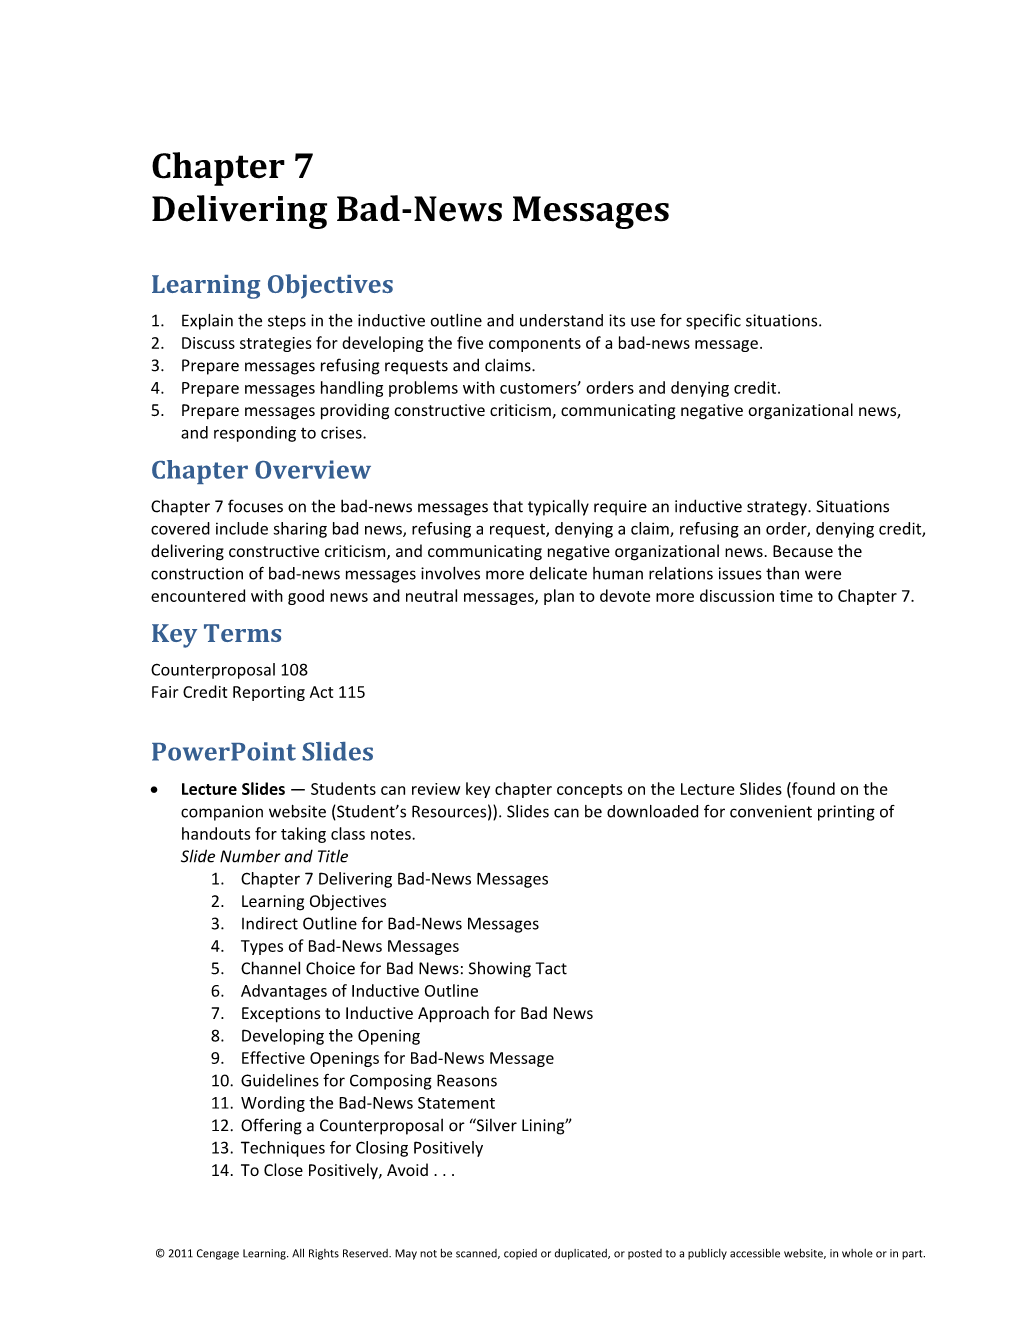 Delivering Bad-News Messages